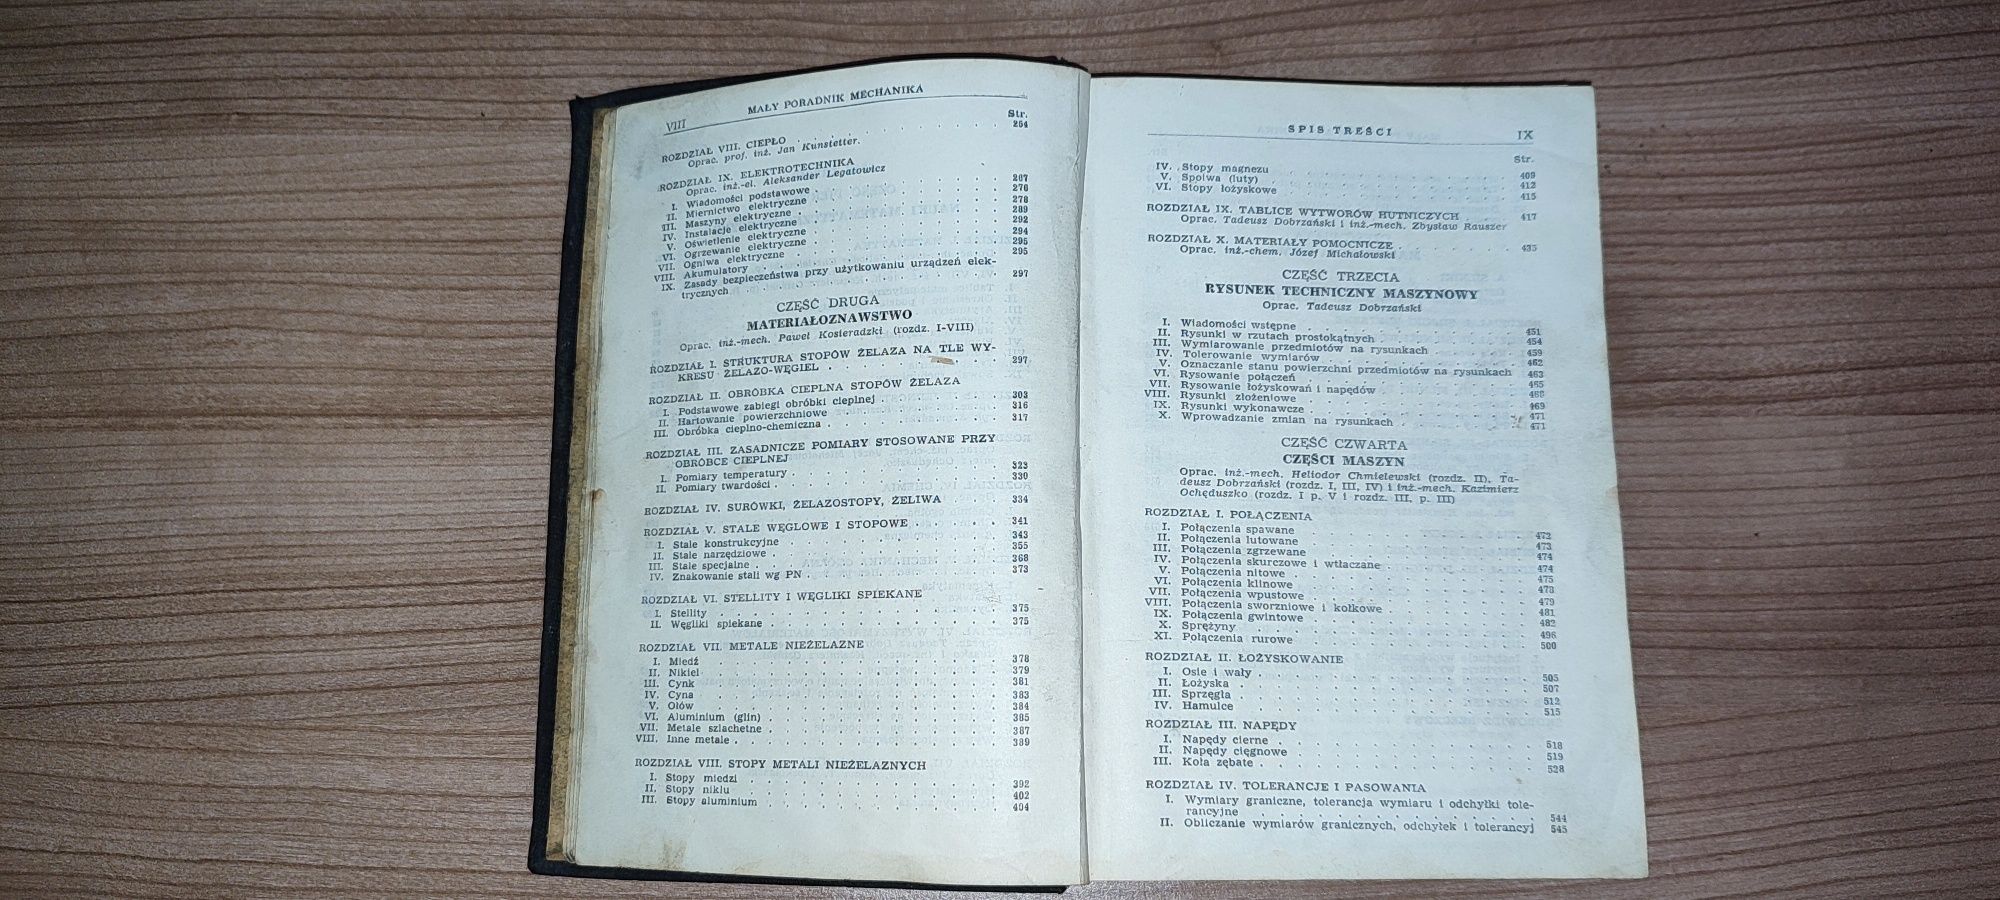 Mały poradnik mechanika 1952. Państwowe wydawnictwa naukowe wydanie II